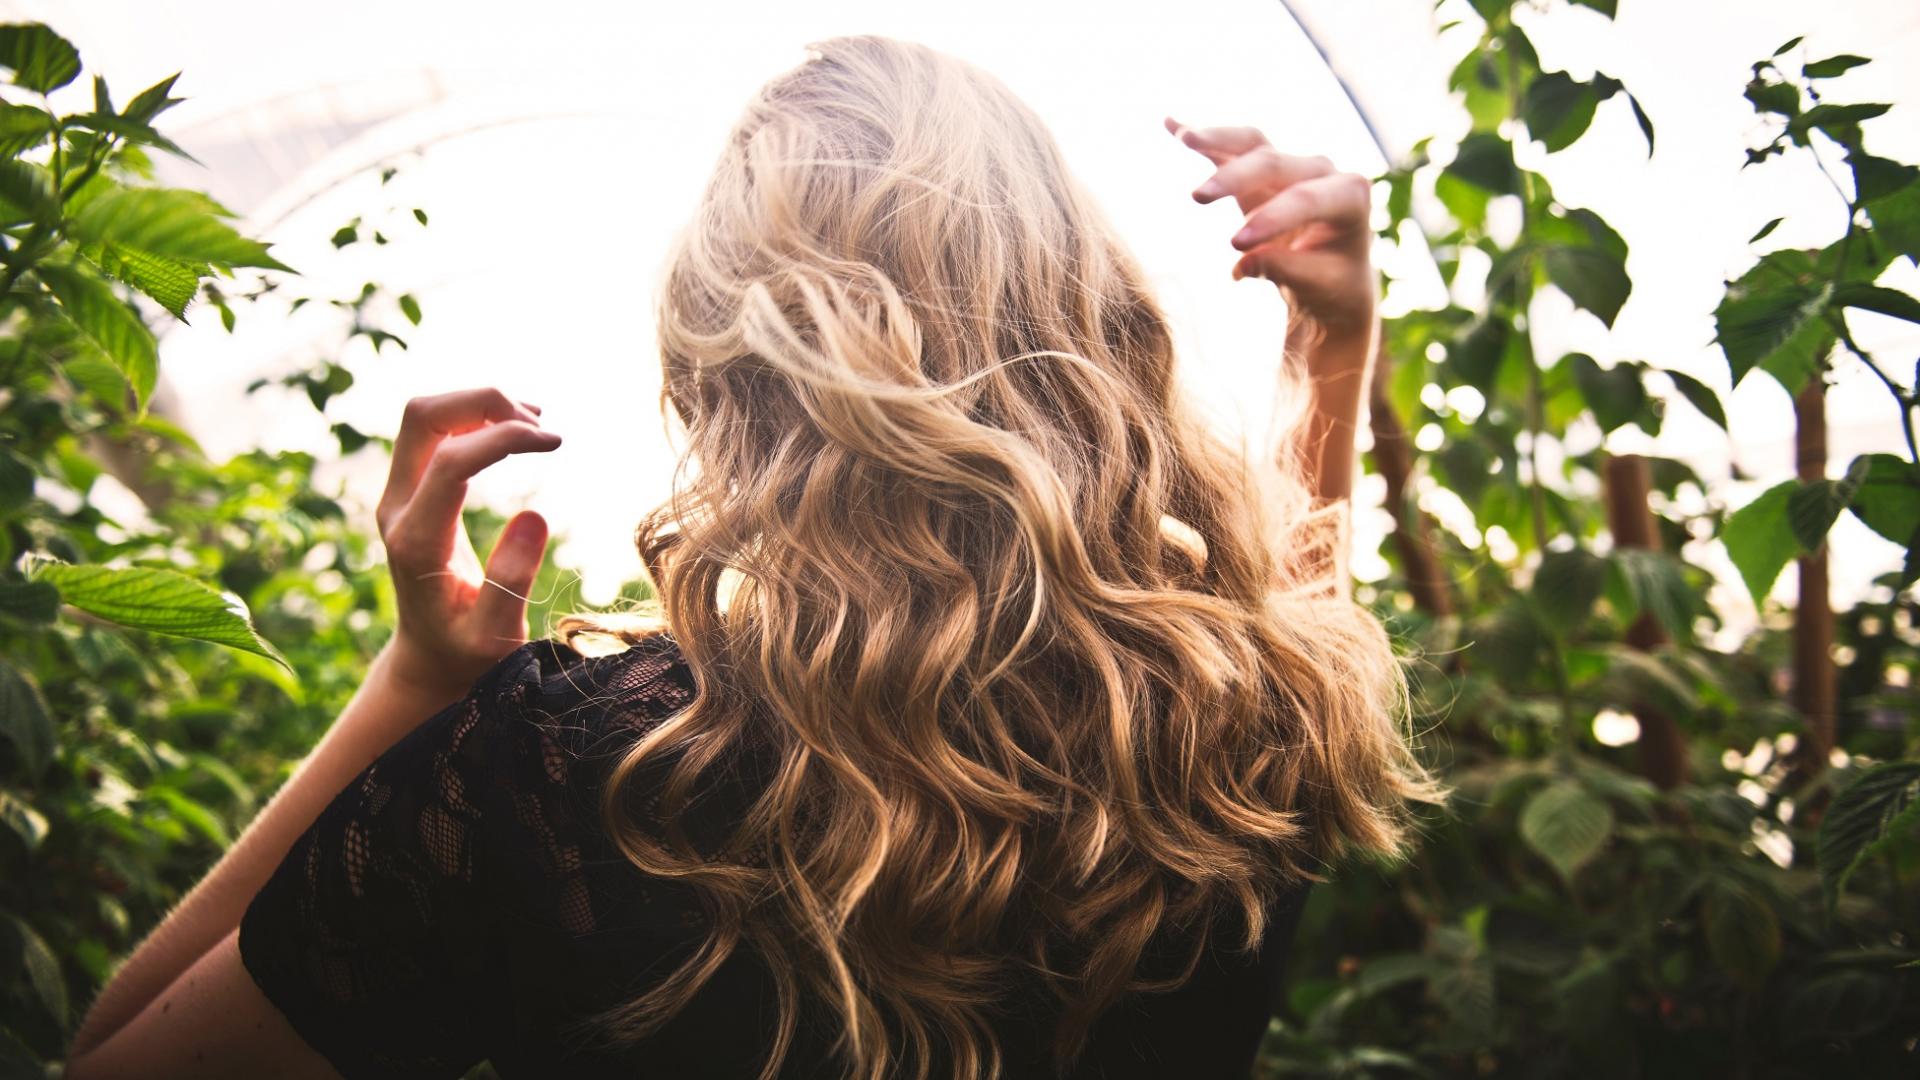 Frau mit blonden Haaren im Garten